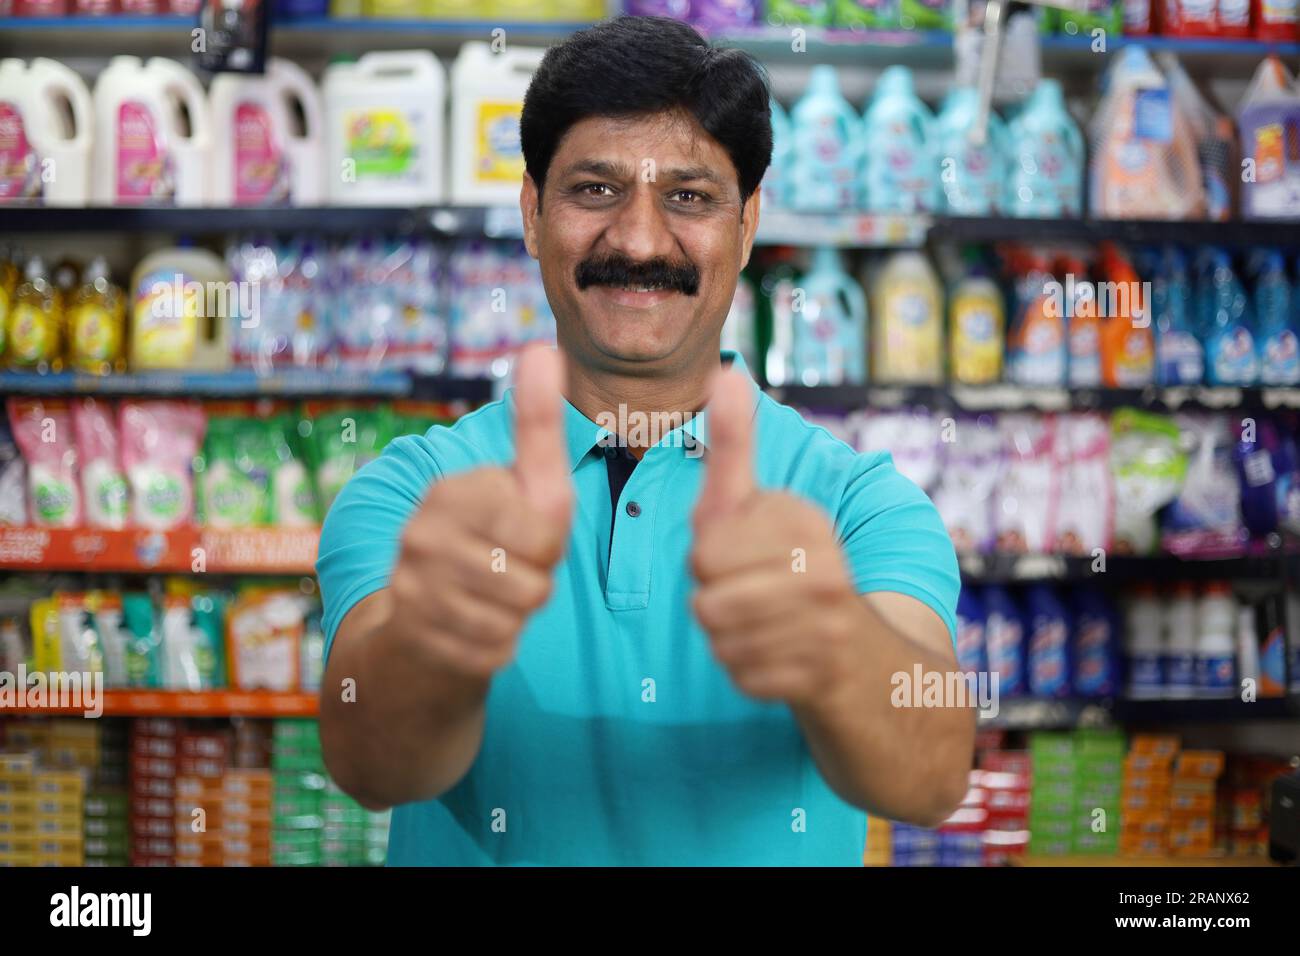 Sorridente indiano di mezza età che acquista in un negozio di alimentari. Comprare della spesa per casa in un supermercato. Uomo allegro e gioioso che fa il pollice in alto. Foto Stock